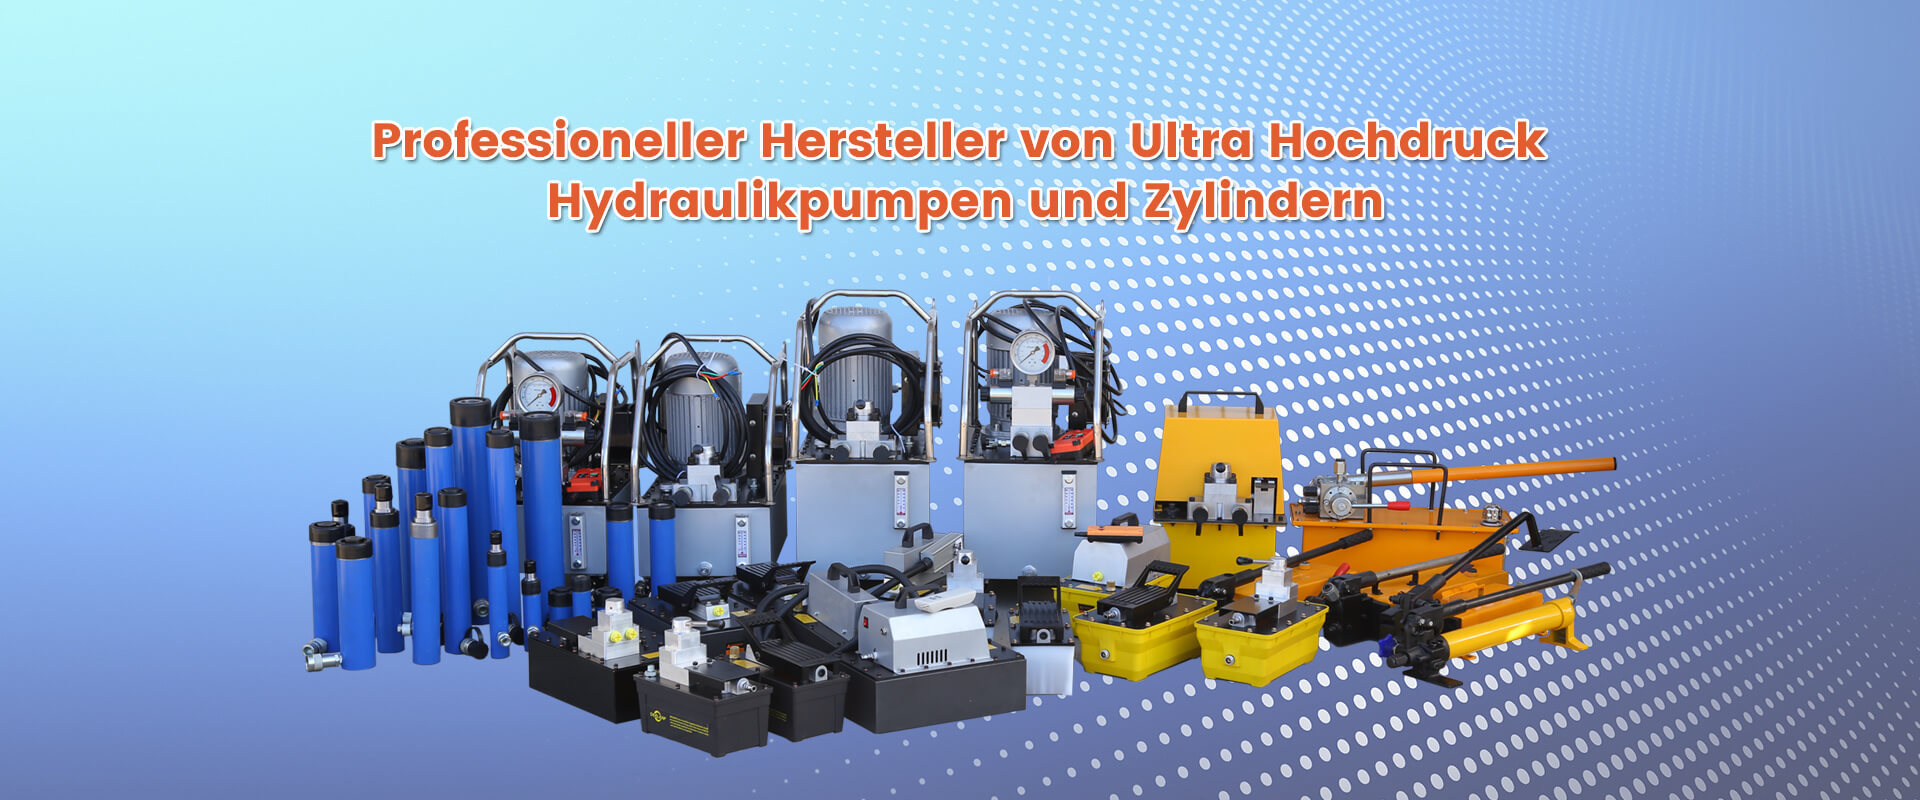 Professioneller Hersteller von Ultra Hochdruck Hydraulikpumpen und Zylindern